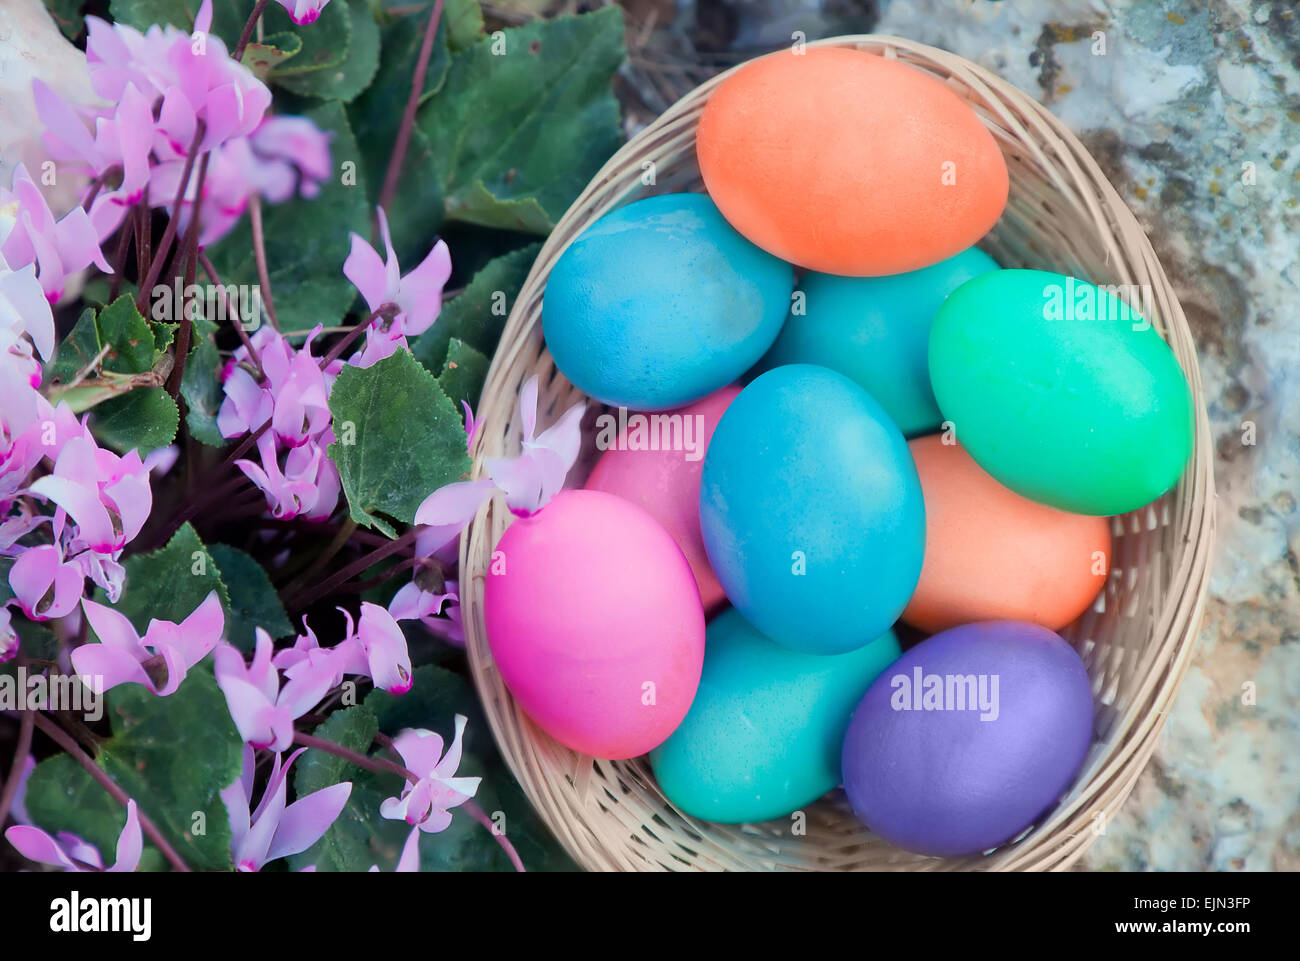 Cesta de huevos de Pascua con Cyclamen flores, vista desde arriba Foto de stock